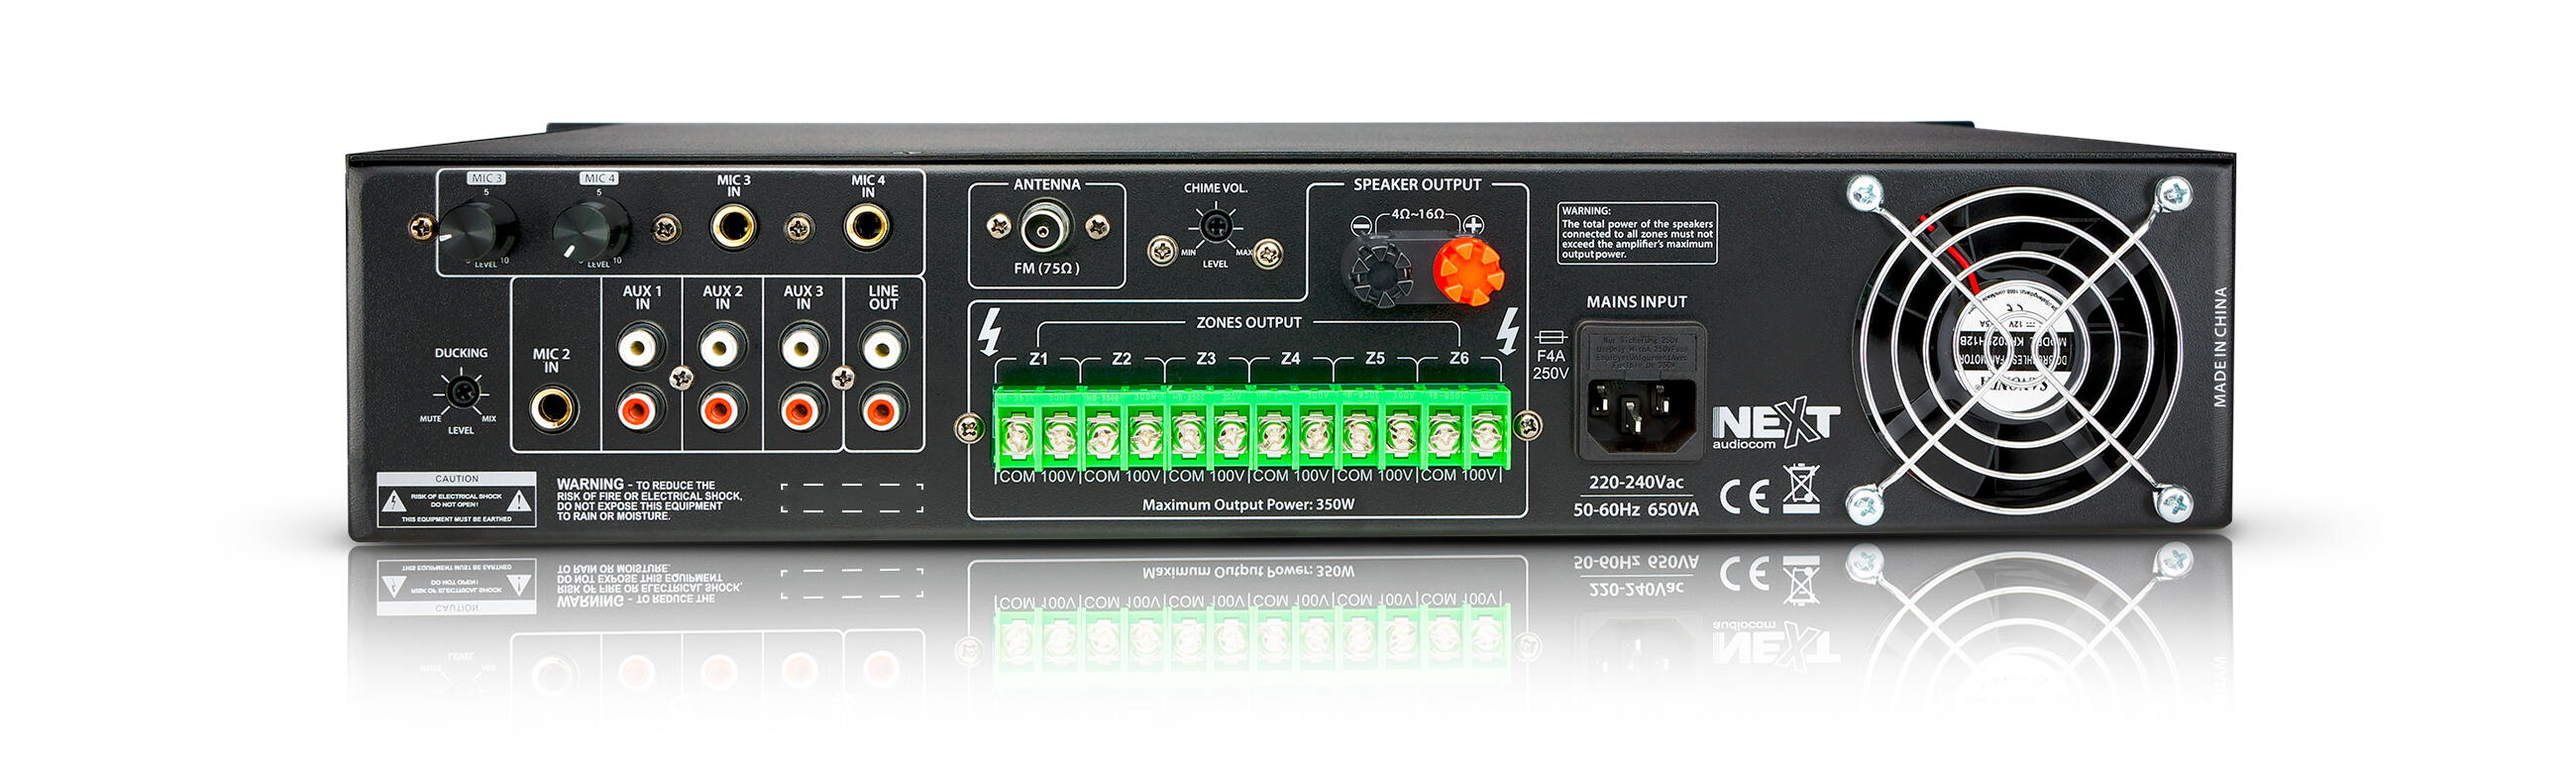 NEXT-Audiocom-mx350-back